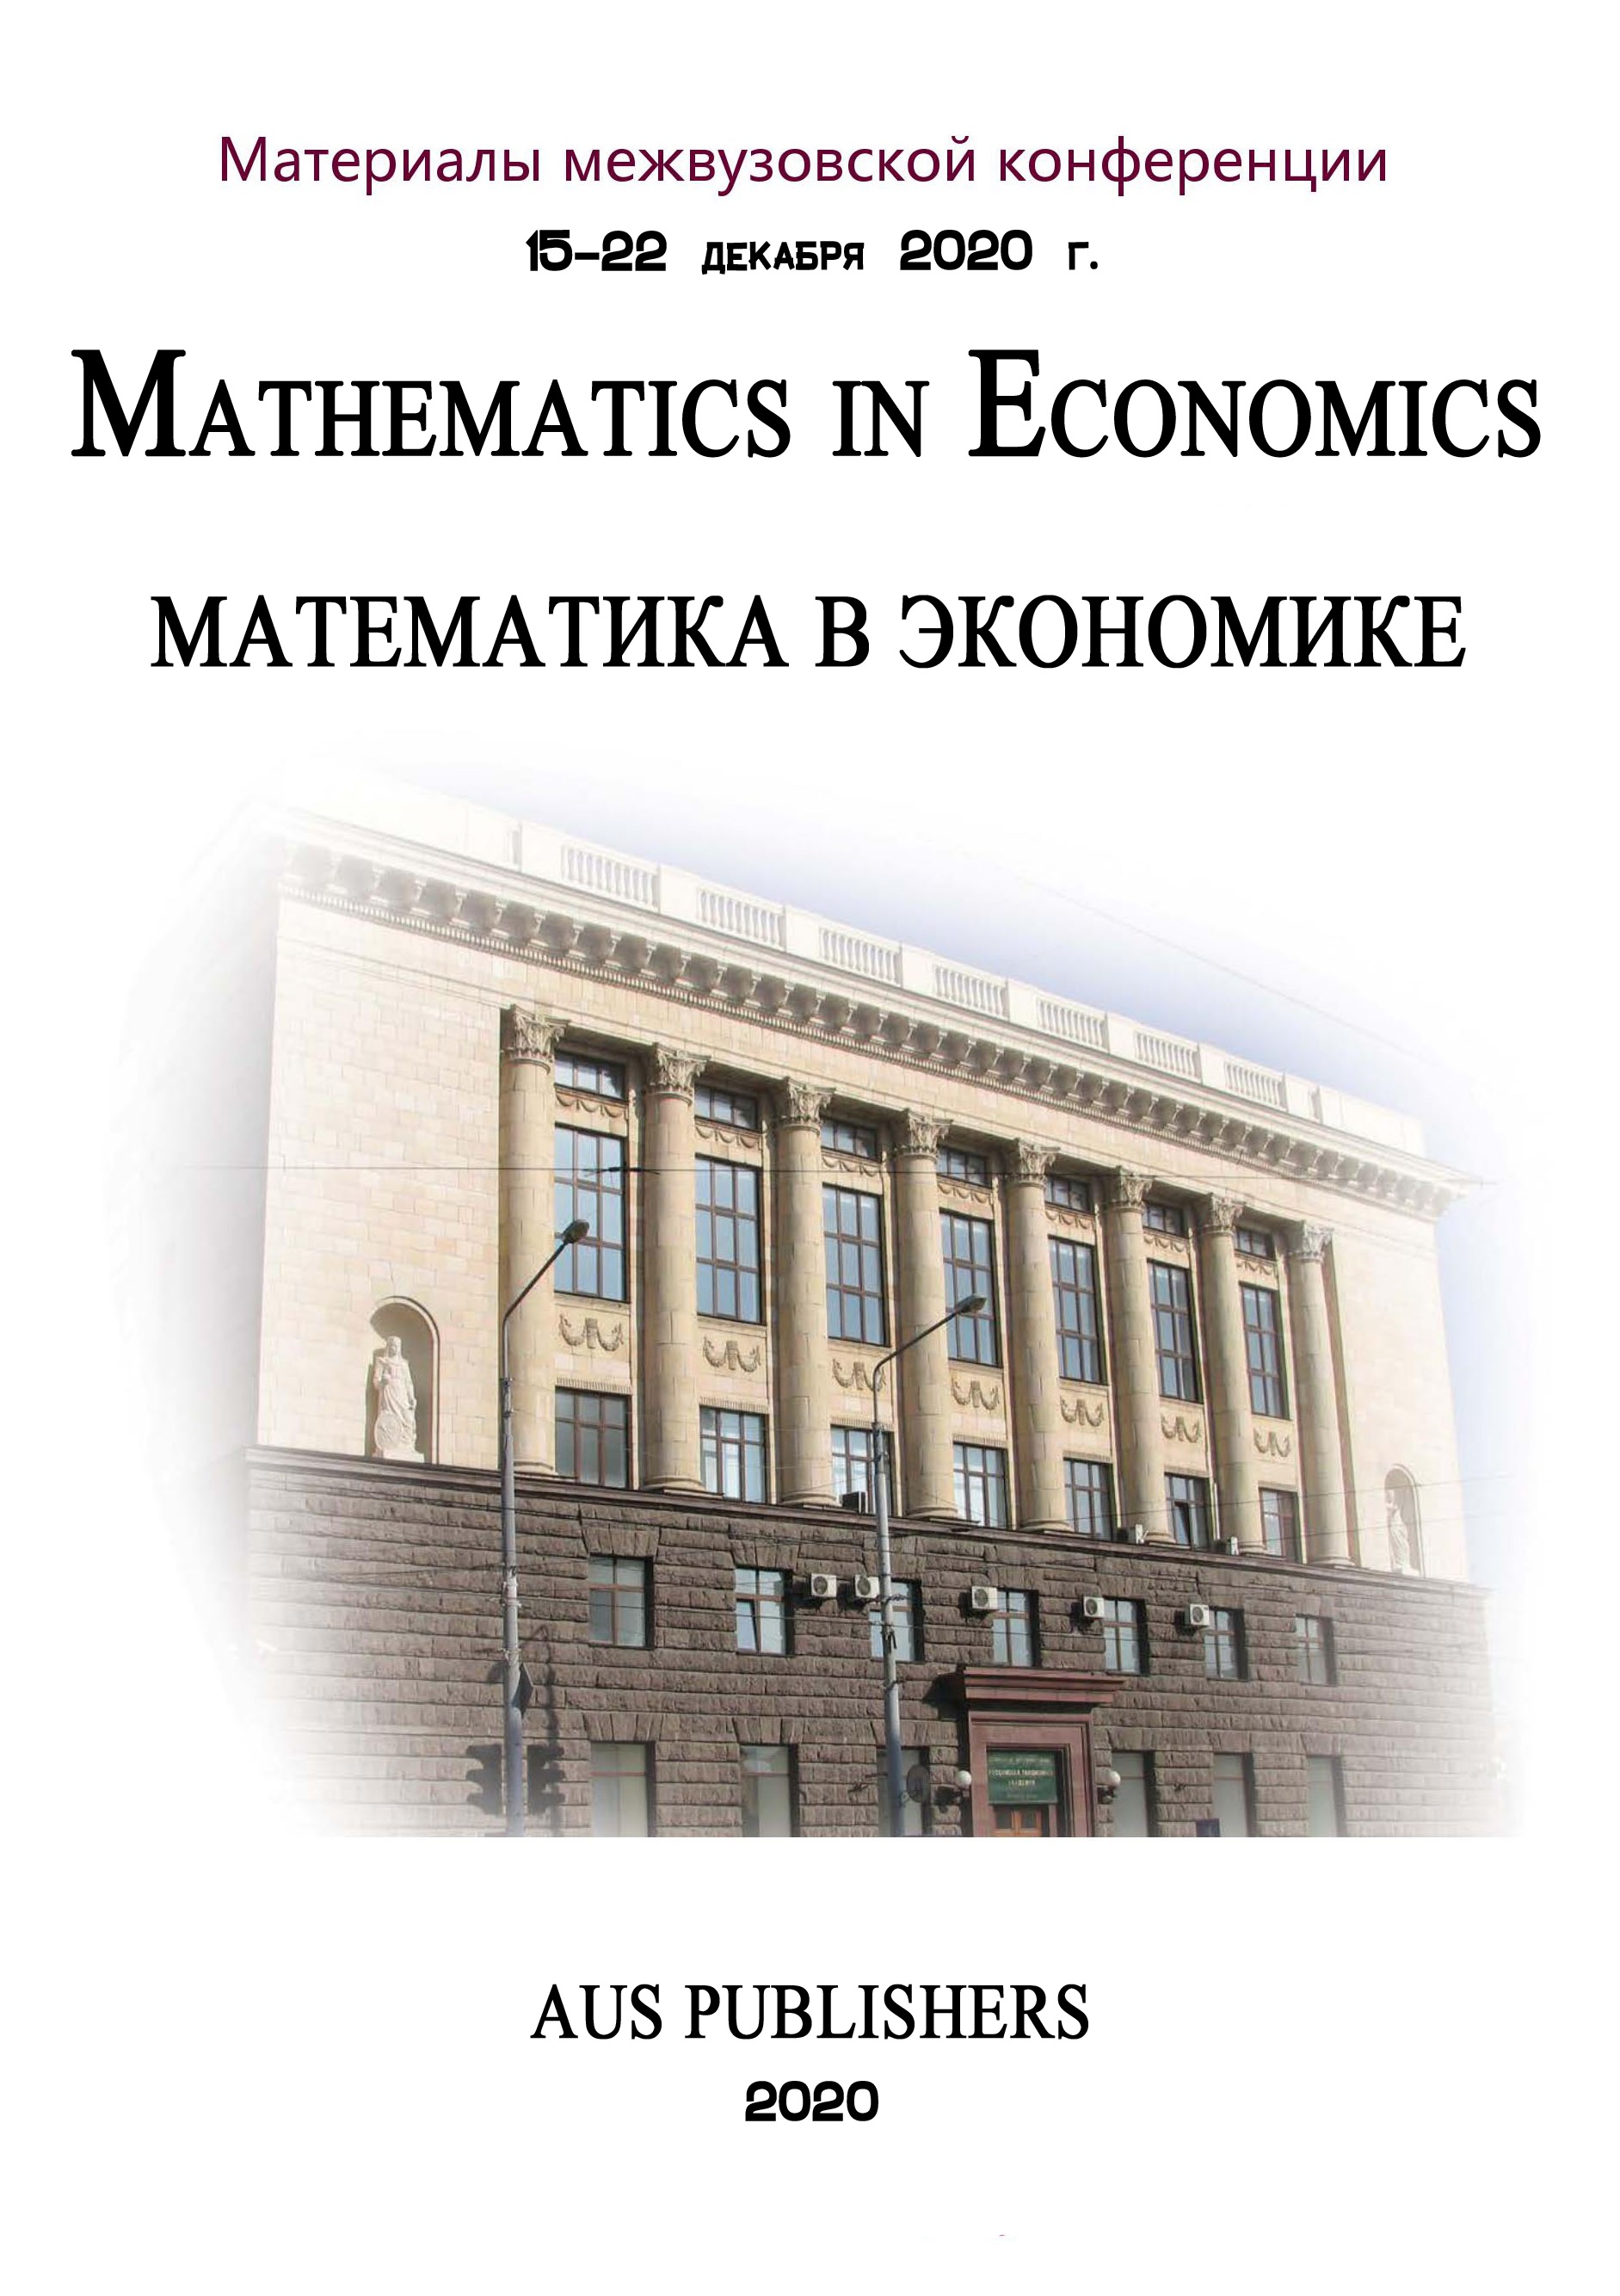             Математика в экономике
    